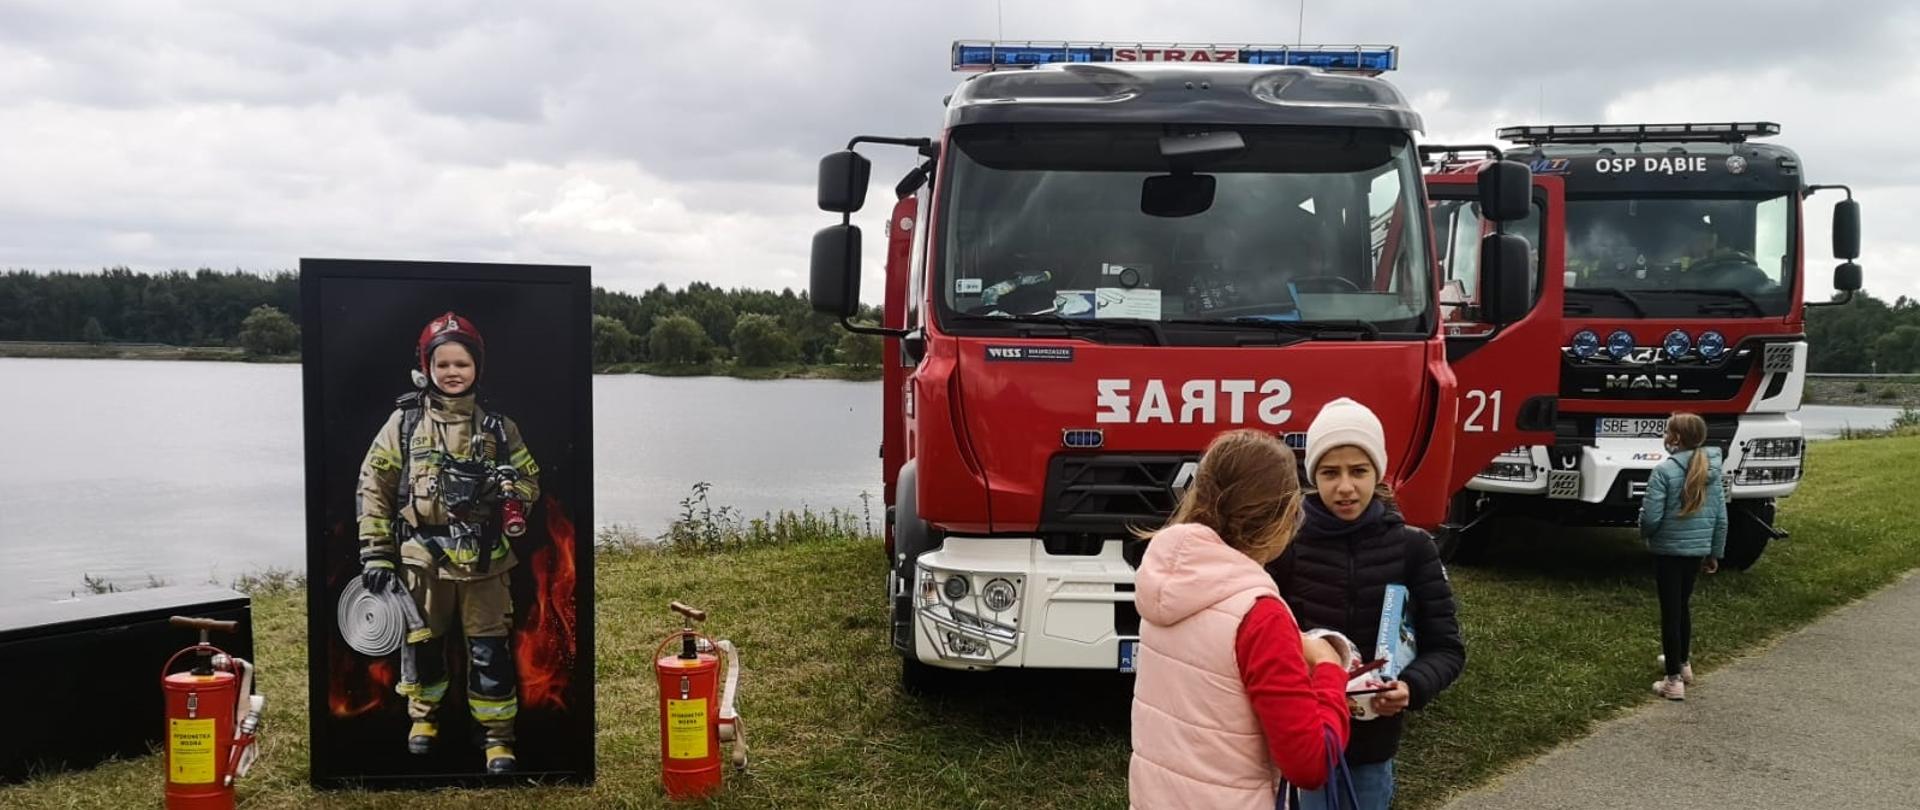 Zdjęcie przedstawia samochody ratowniczo- gaśnicze zaparkowane przy akwenie wodnym oraz dzieci które wykonywały zdjęcia przy makiecie strażaka.